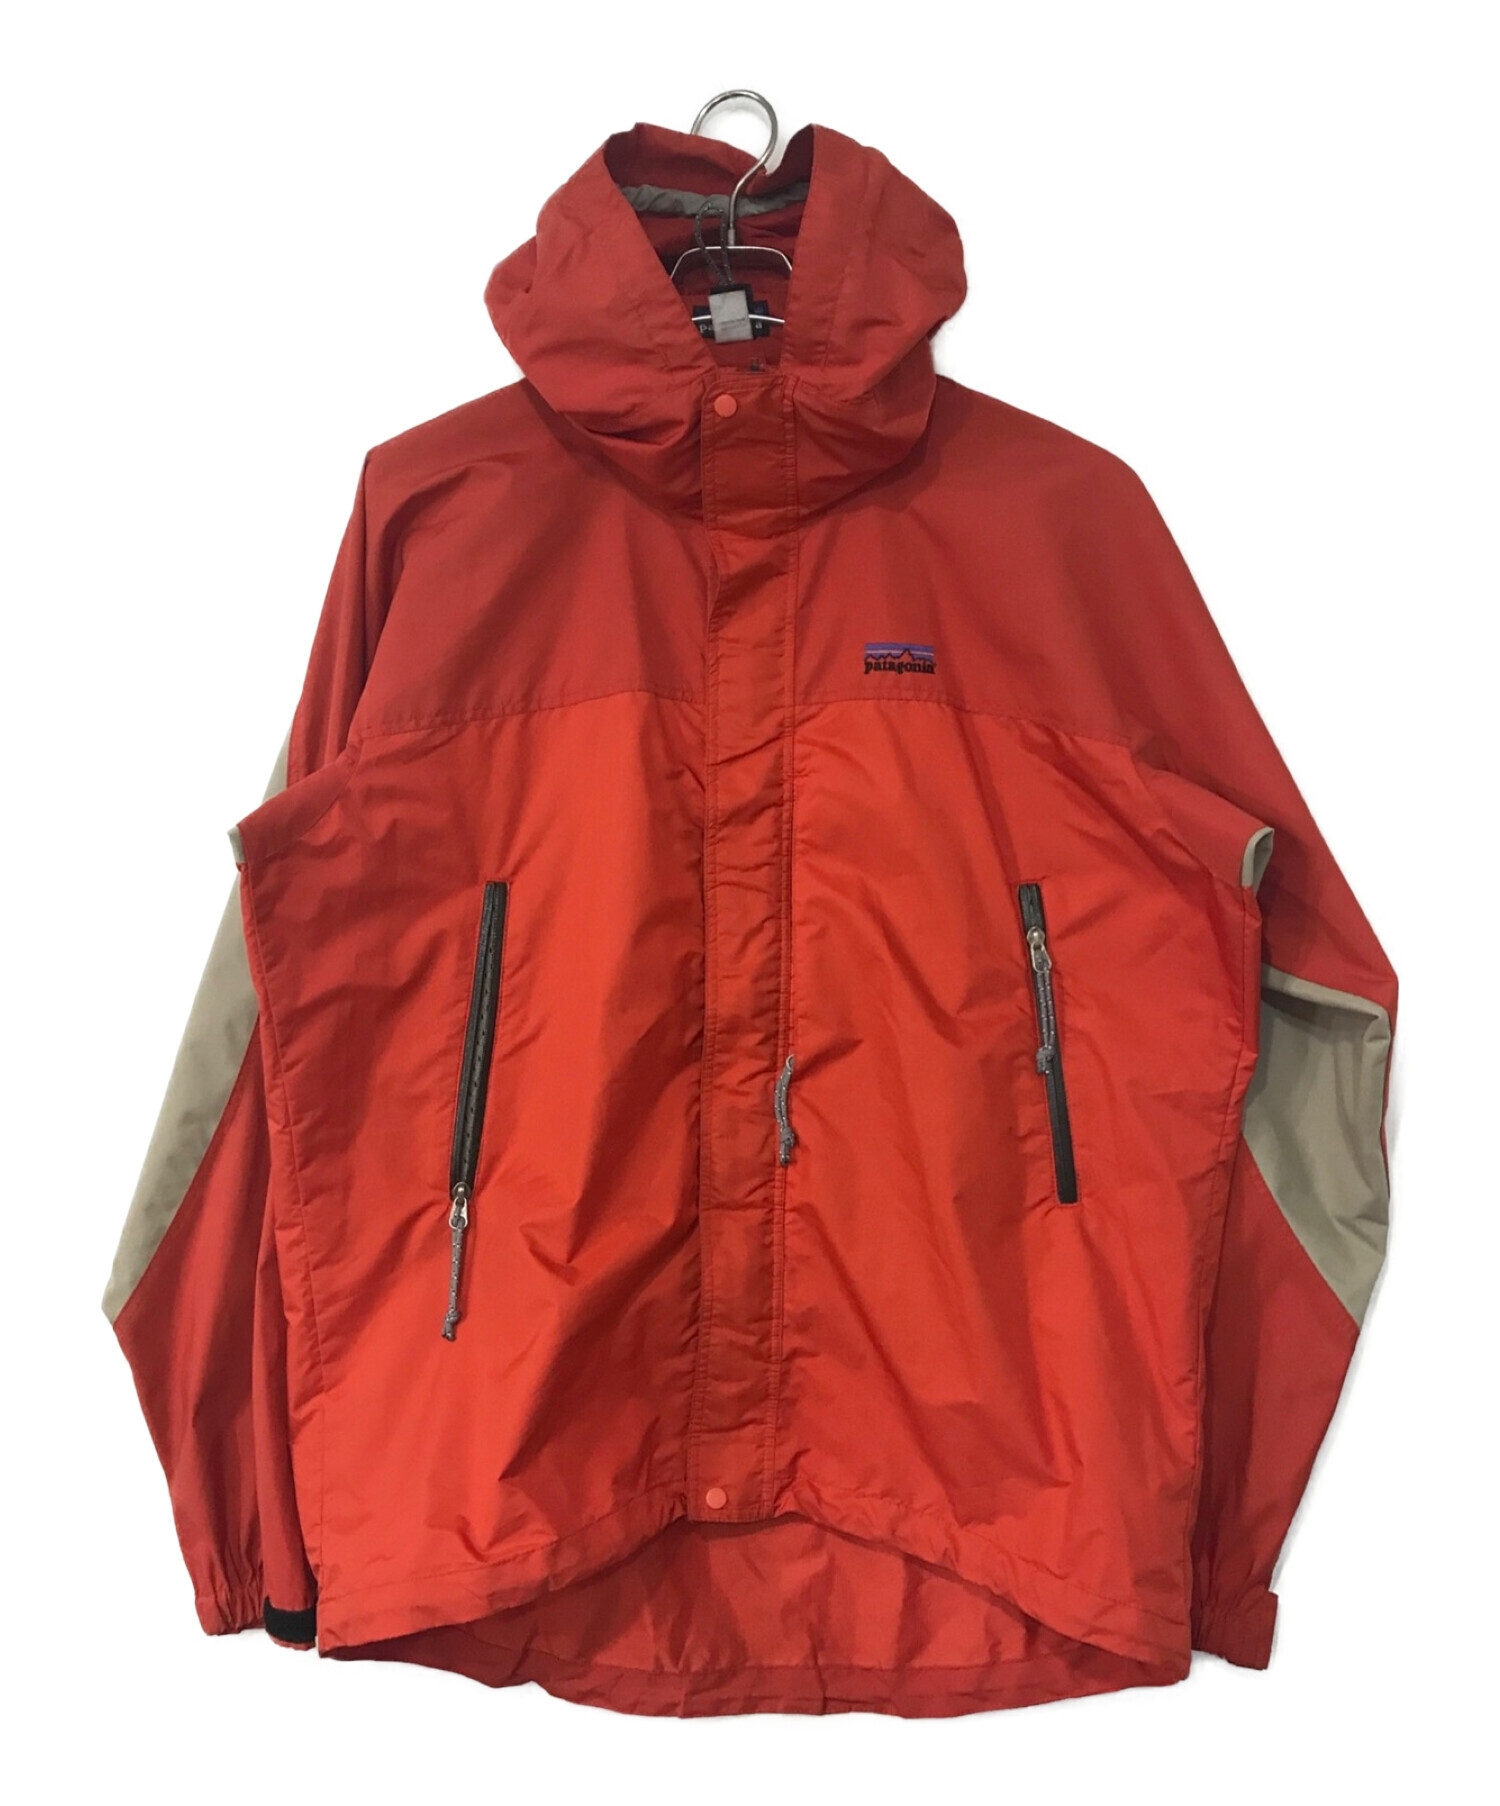 Patagonia (パタゴニア) エッセンシャルジャケット レッド サイズ:M